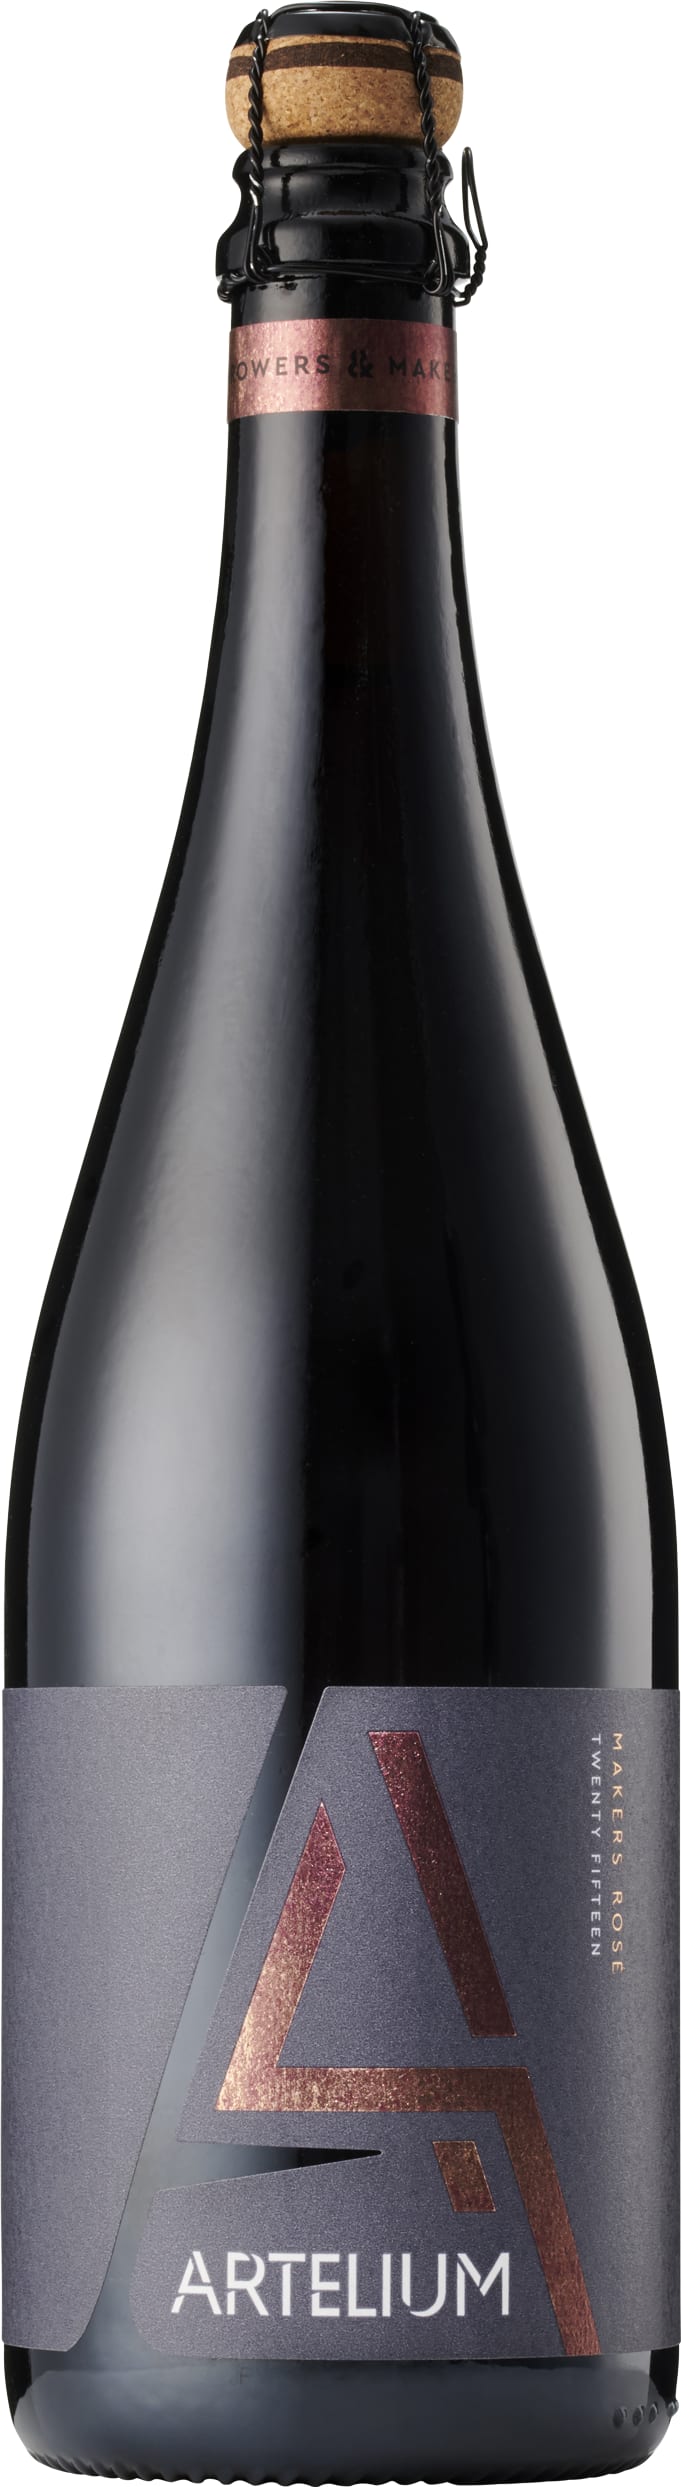 Artelium Makers Rose 2015 75cl - Buy Artelium Wines from GREAT WINES DIRECT wine shop